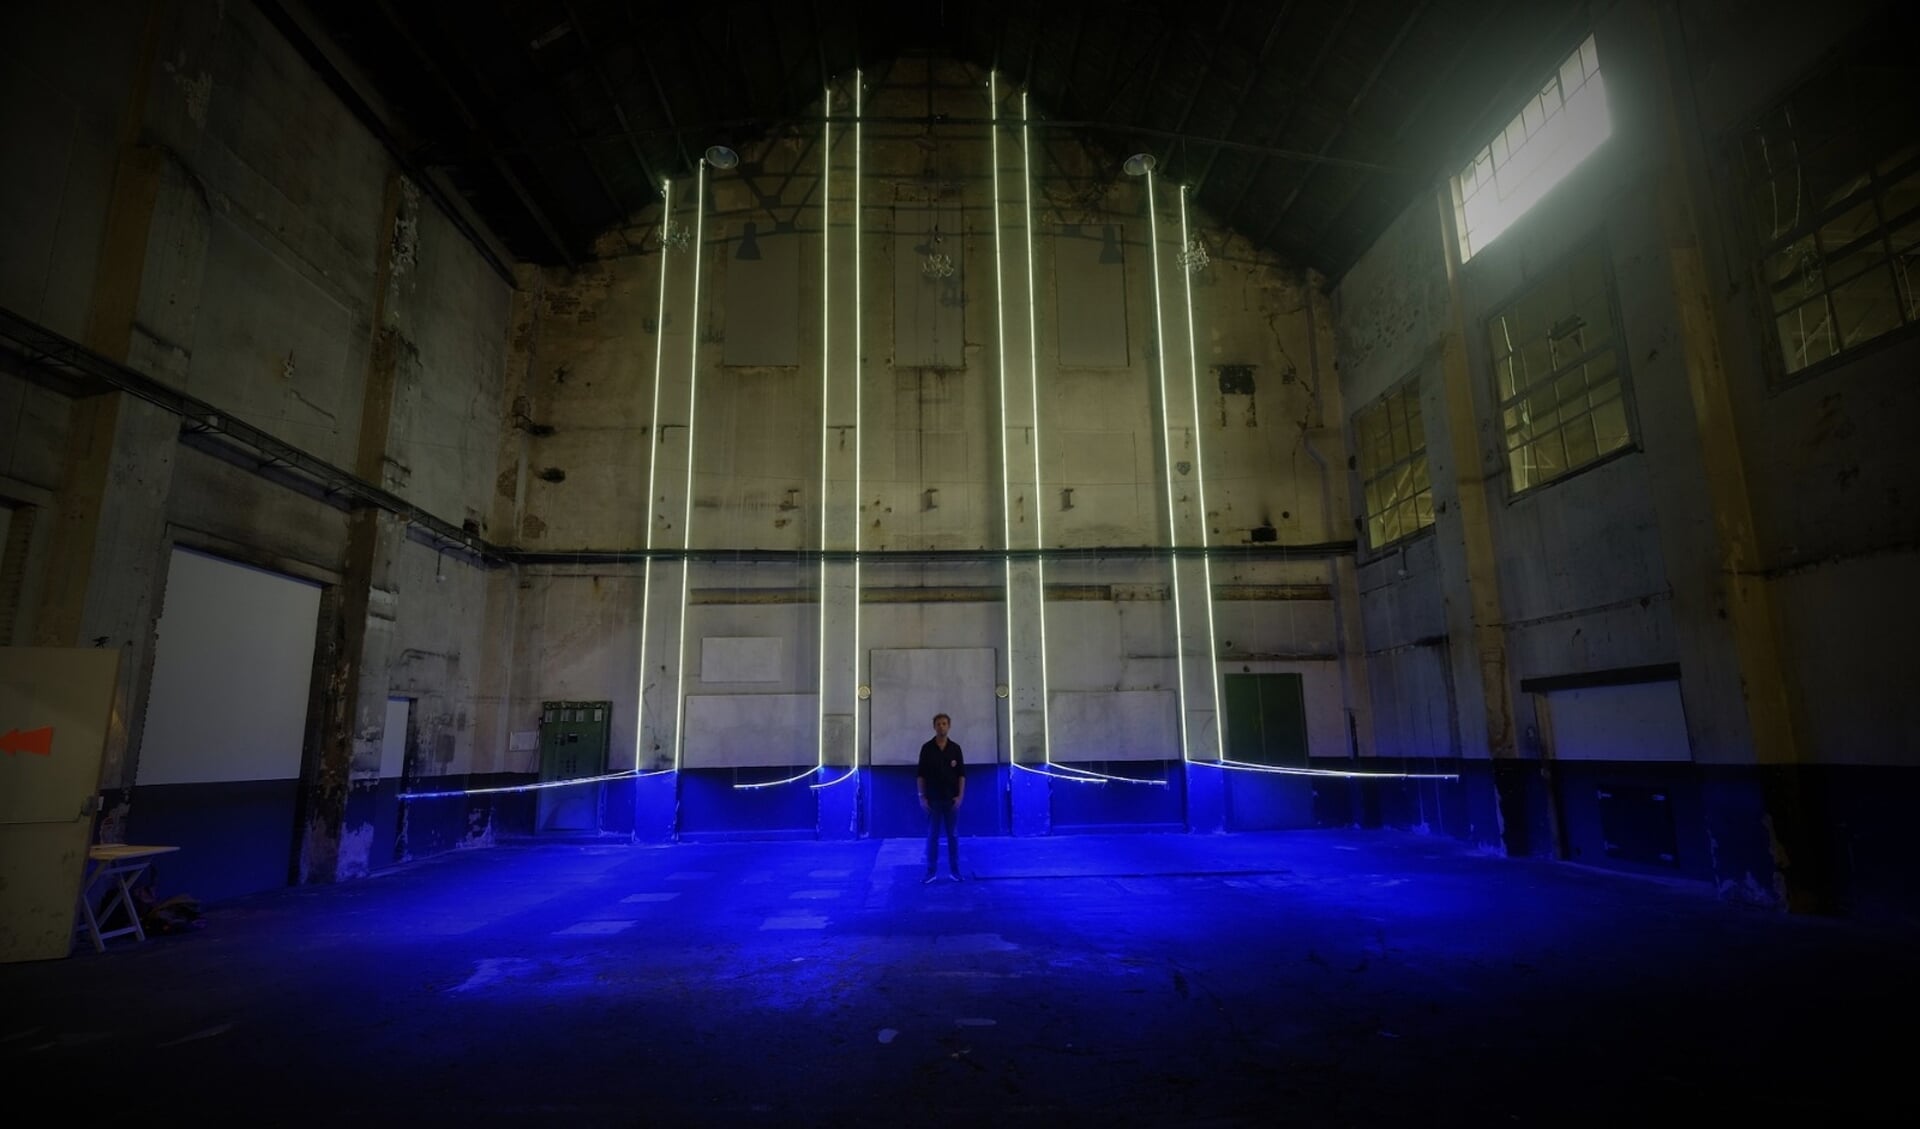 Kunstenaar Pieter Vink speelt met licht.